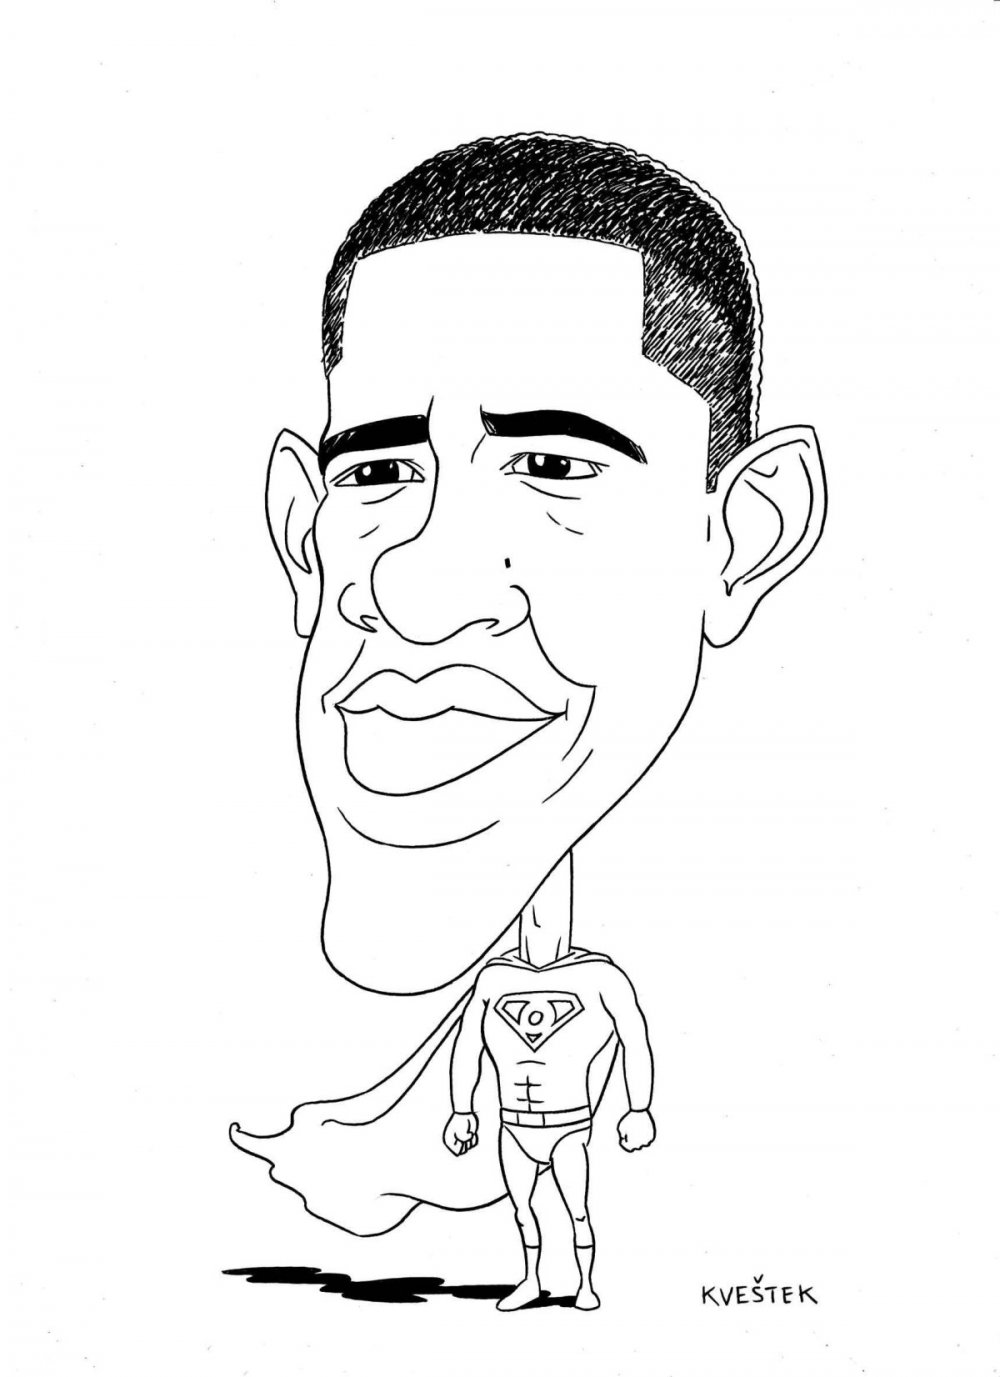 Сатирический портрет Обама